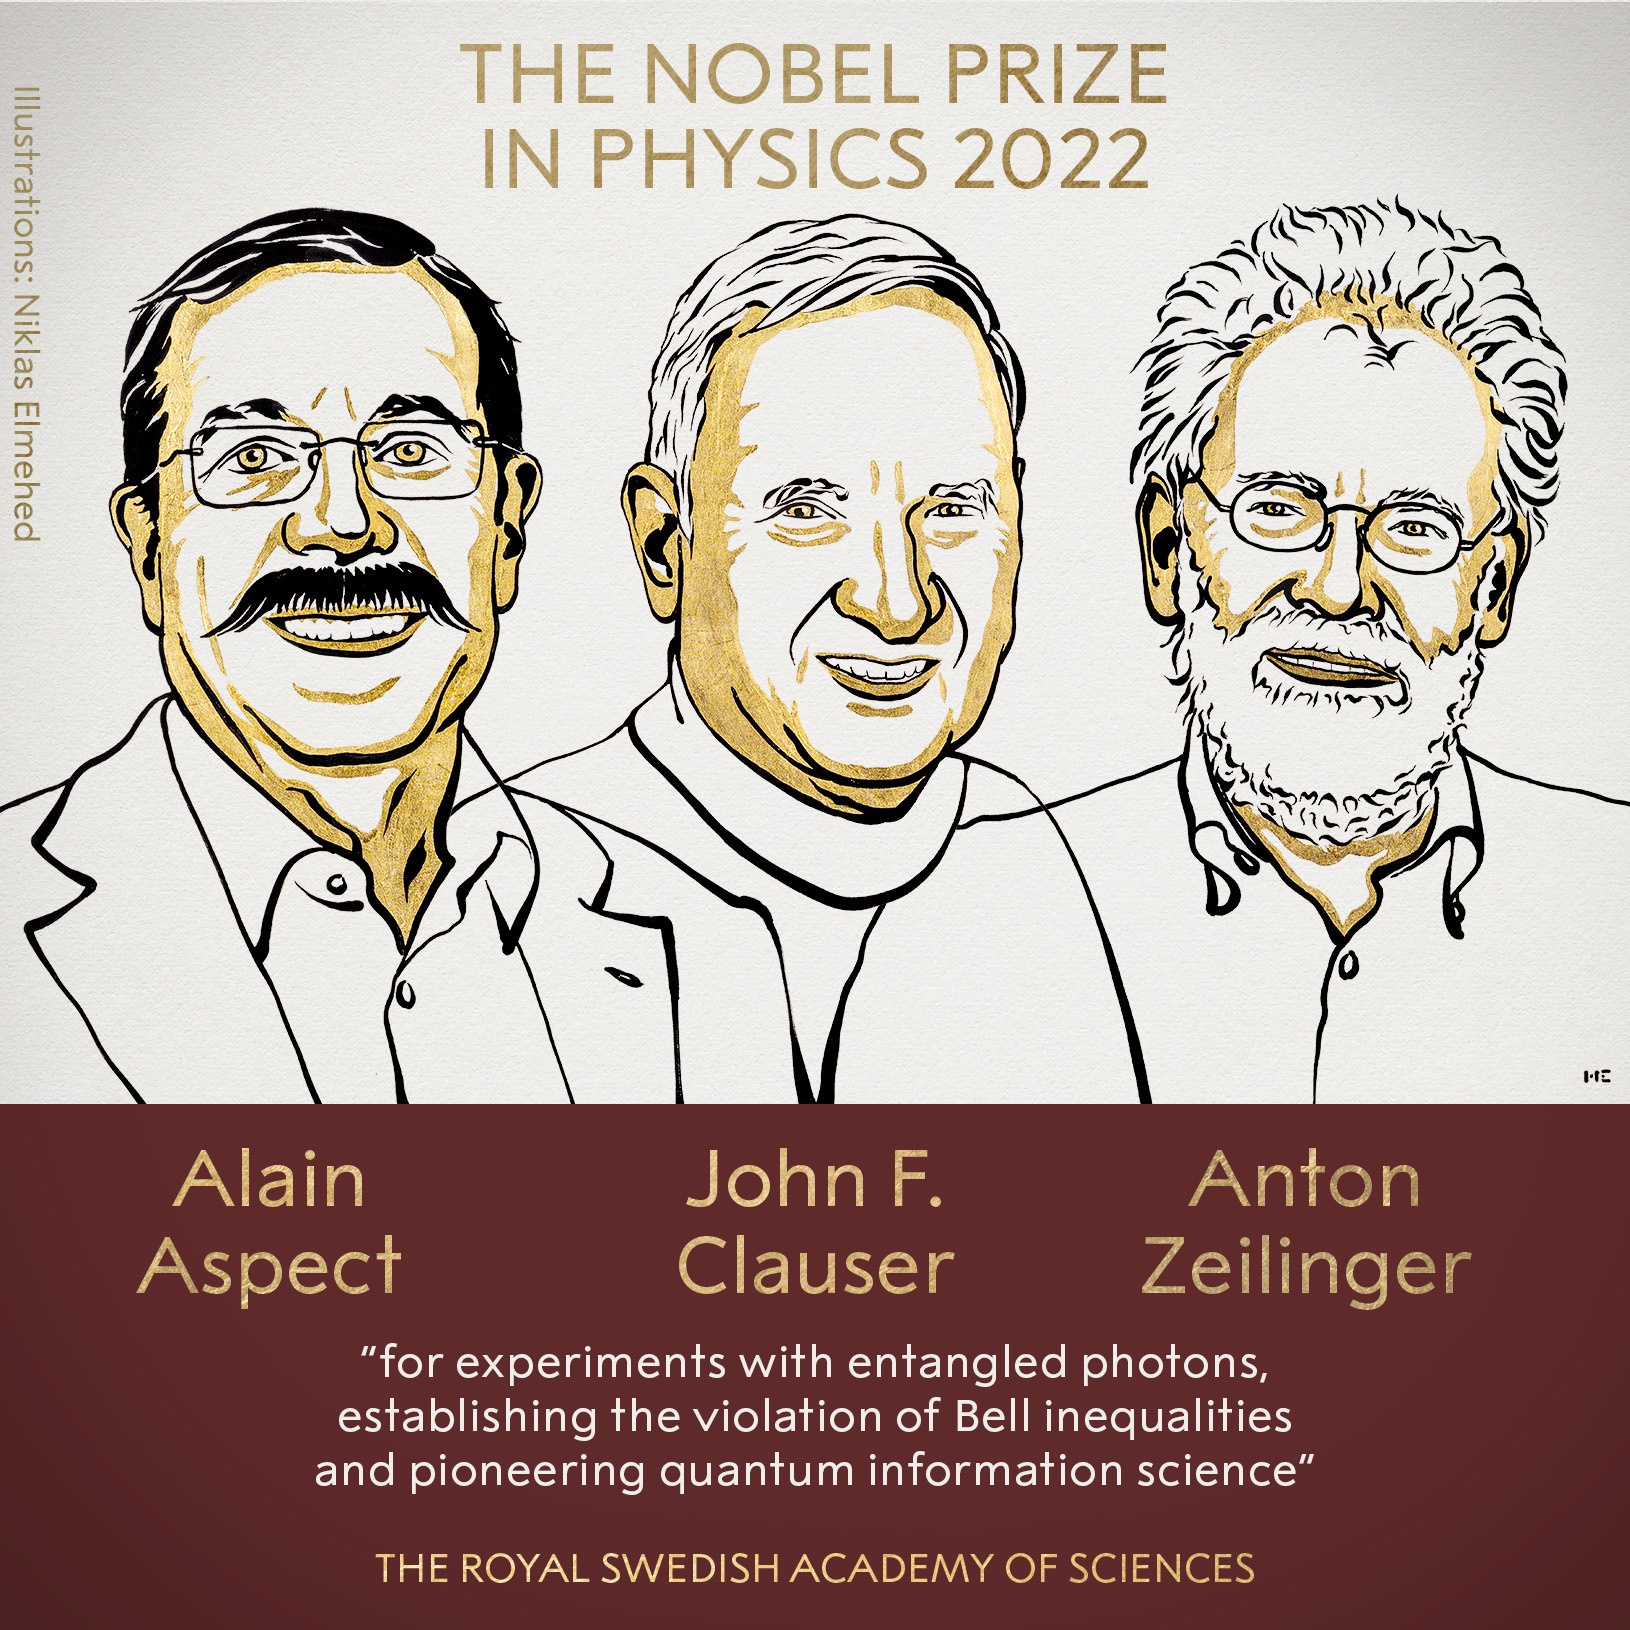 Ilustración, de izquierda a derecha, de los premiados Aspect, Clauser y Zeilinger.